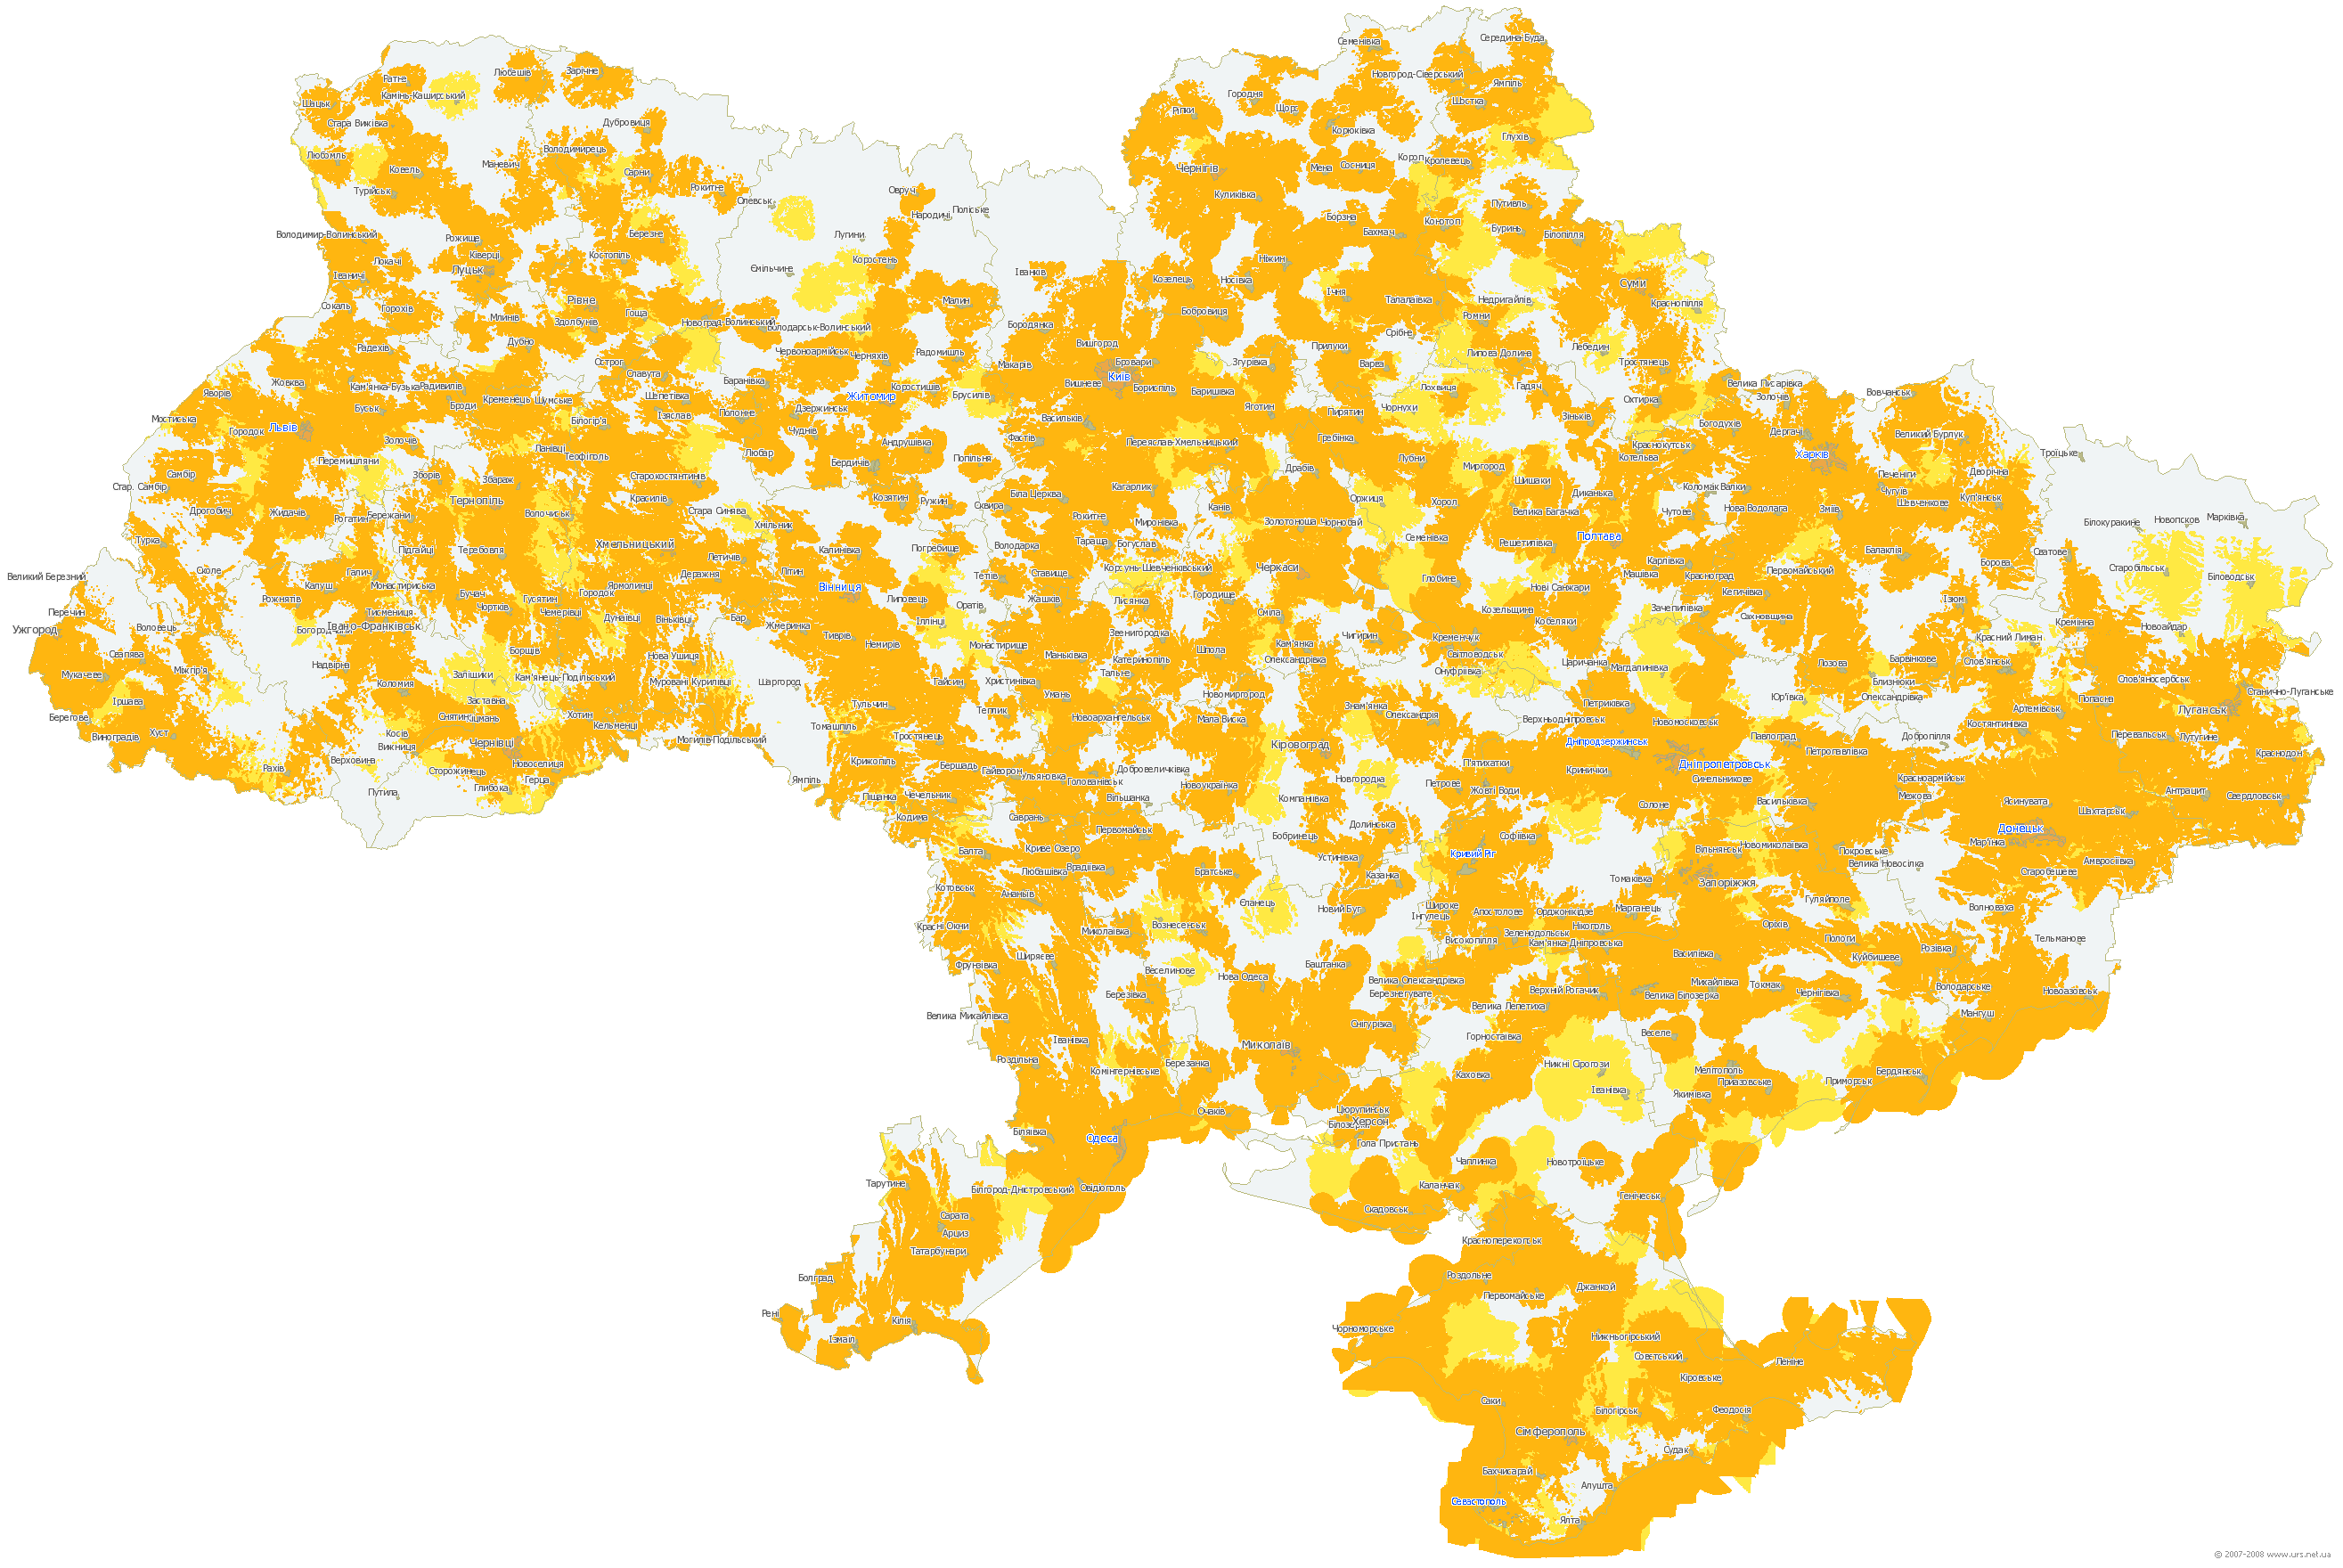 Карта зоны покрытия 3g и 4g билайн по россии 2020 года с указанием городов